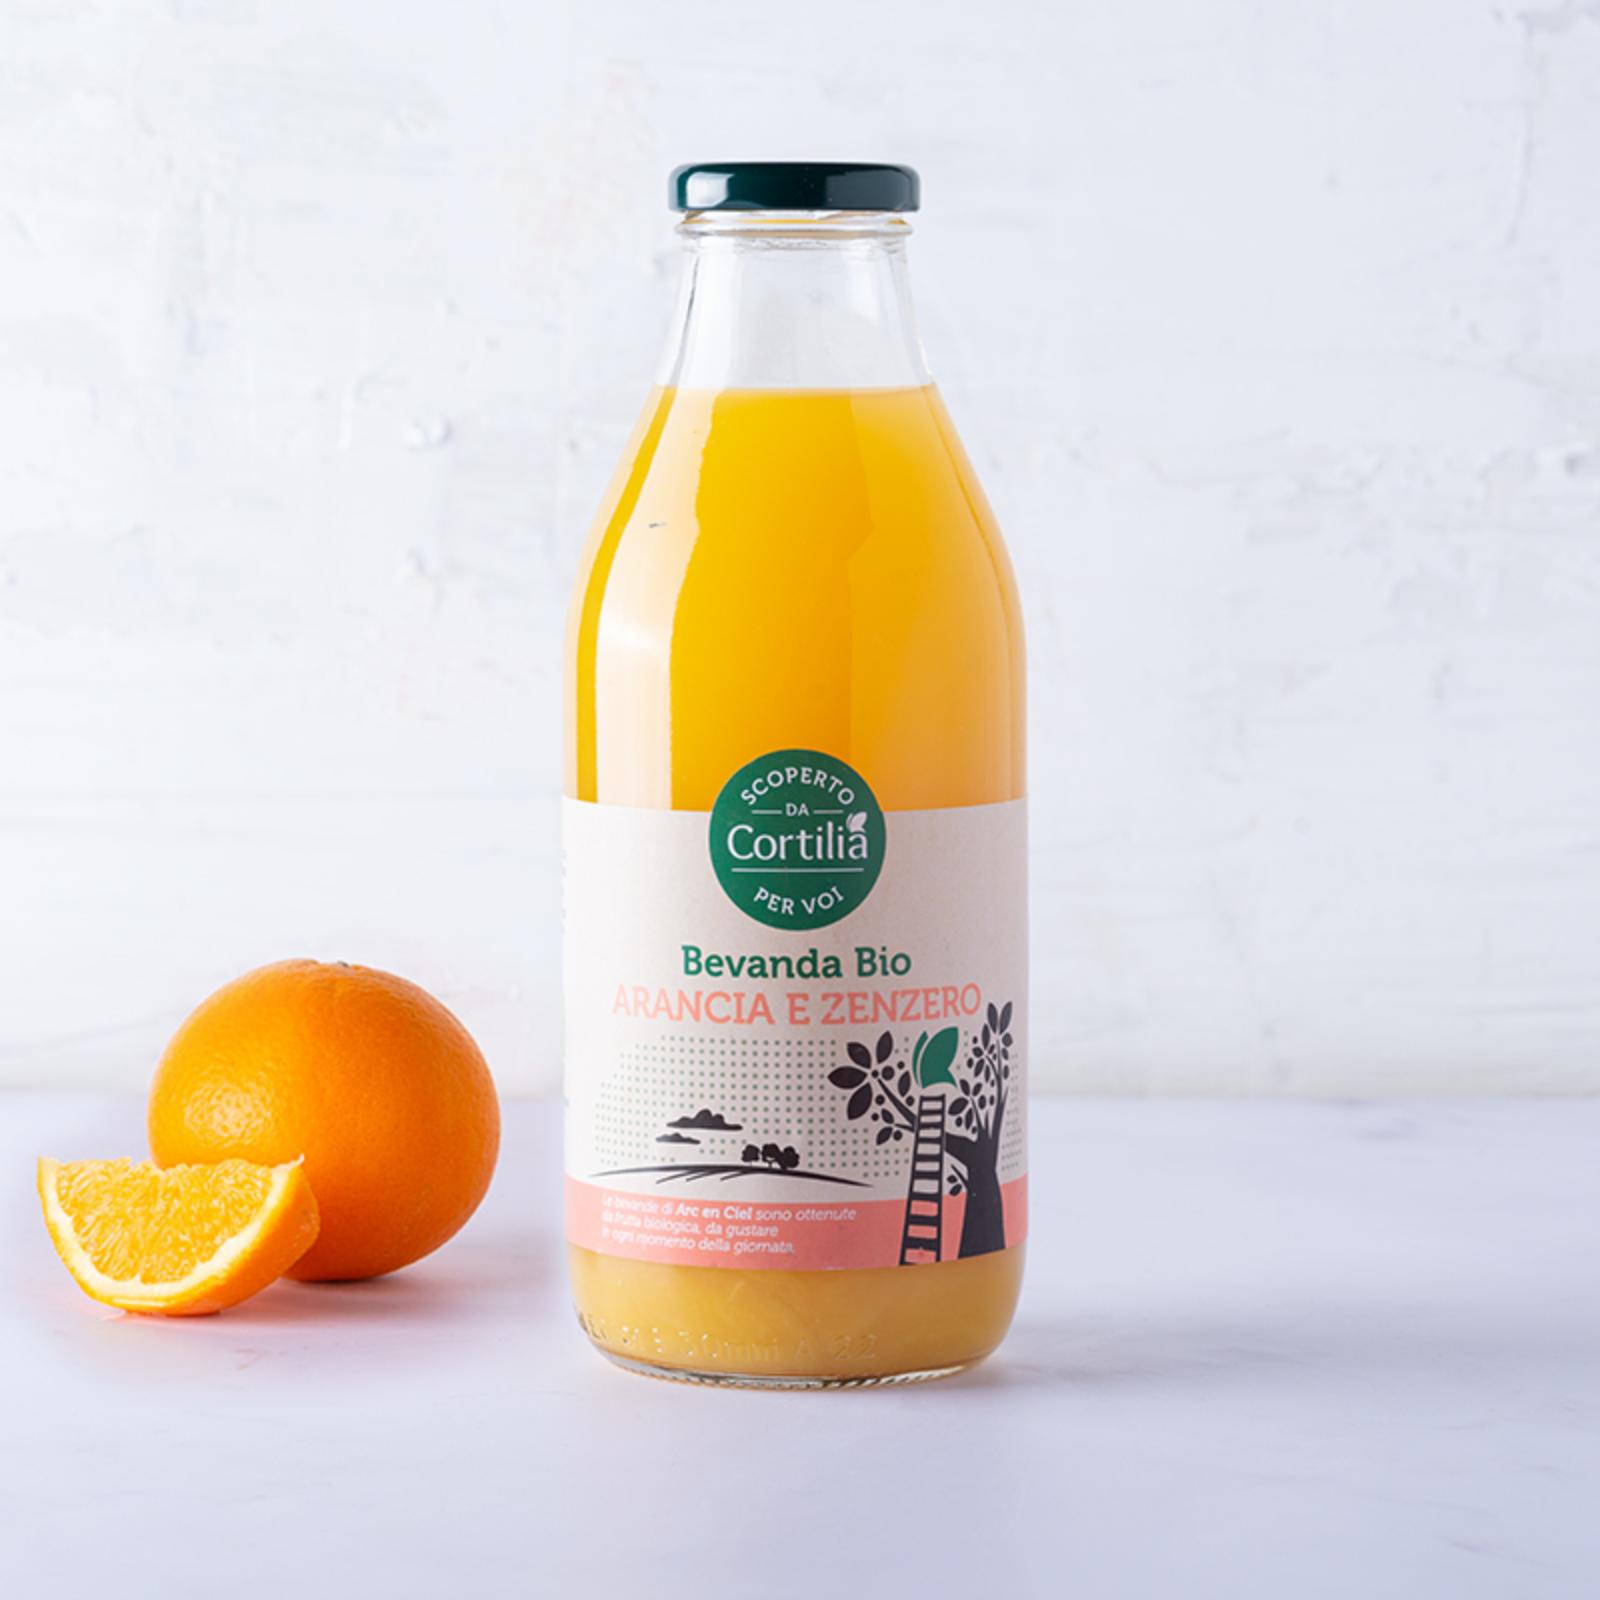 Bevanda arancia, zenzero e mela BIO